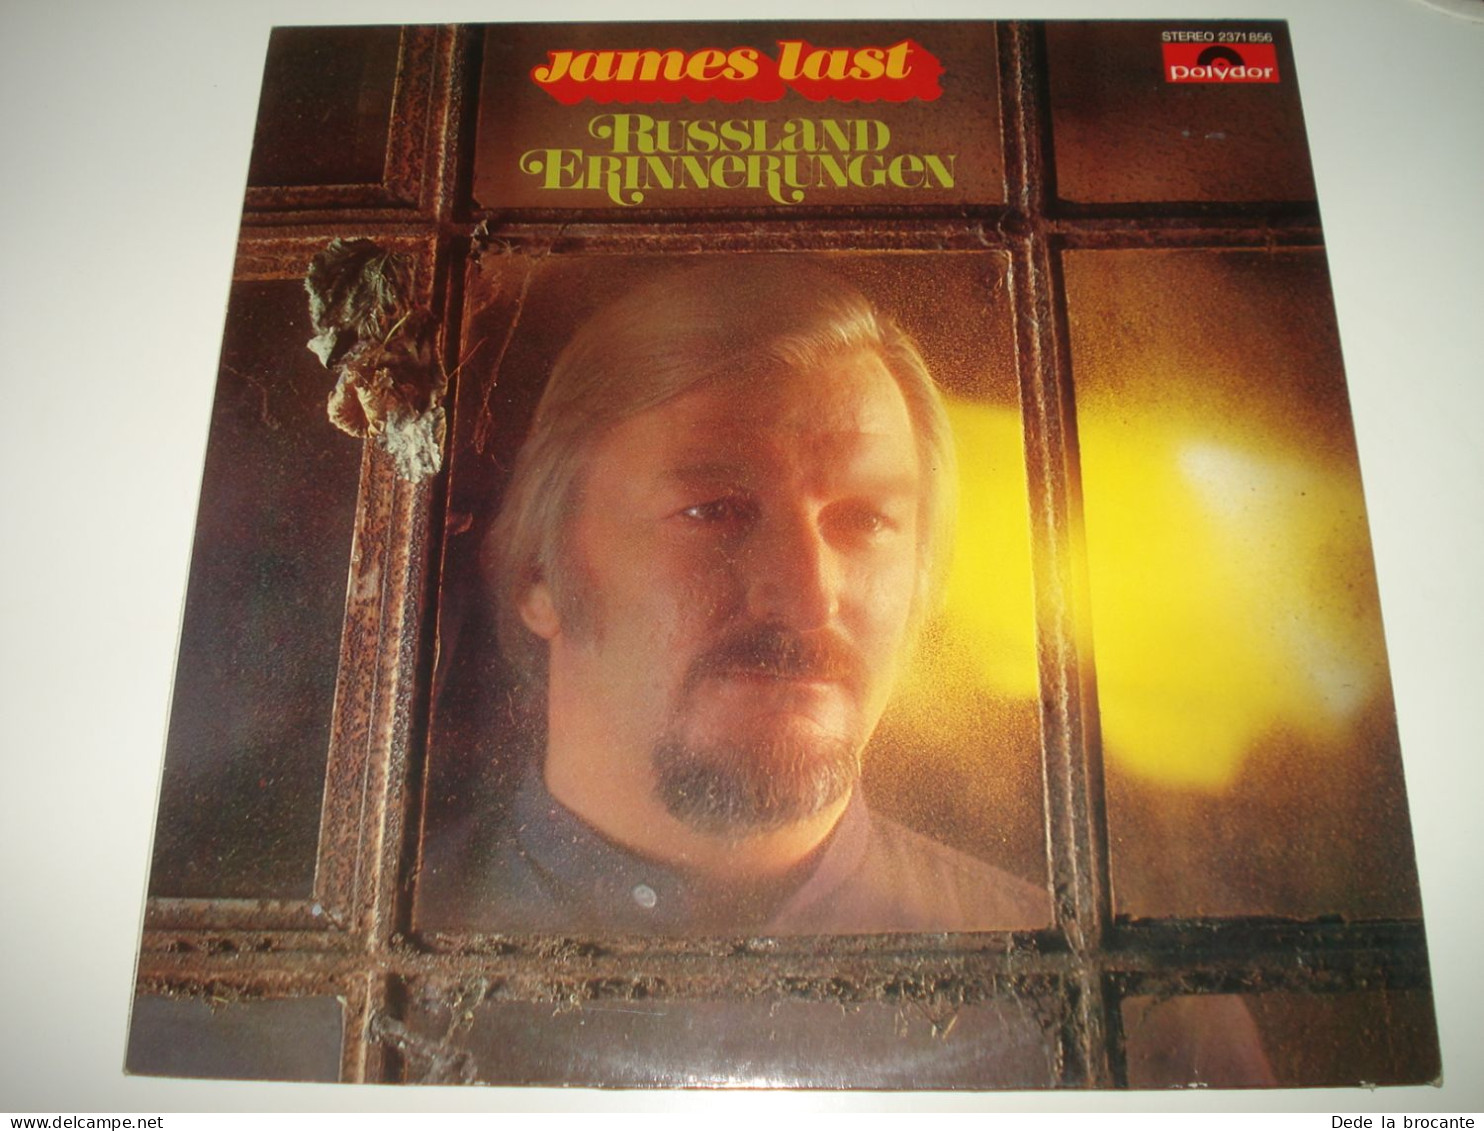 B6 / James Last Russland Erinnerungen - LP - Poly 2371 85 - Ger 1977 - EX/EX - World Music